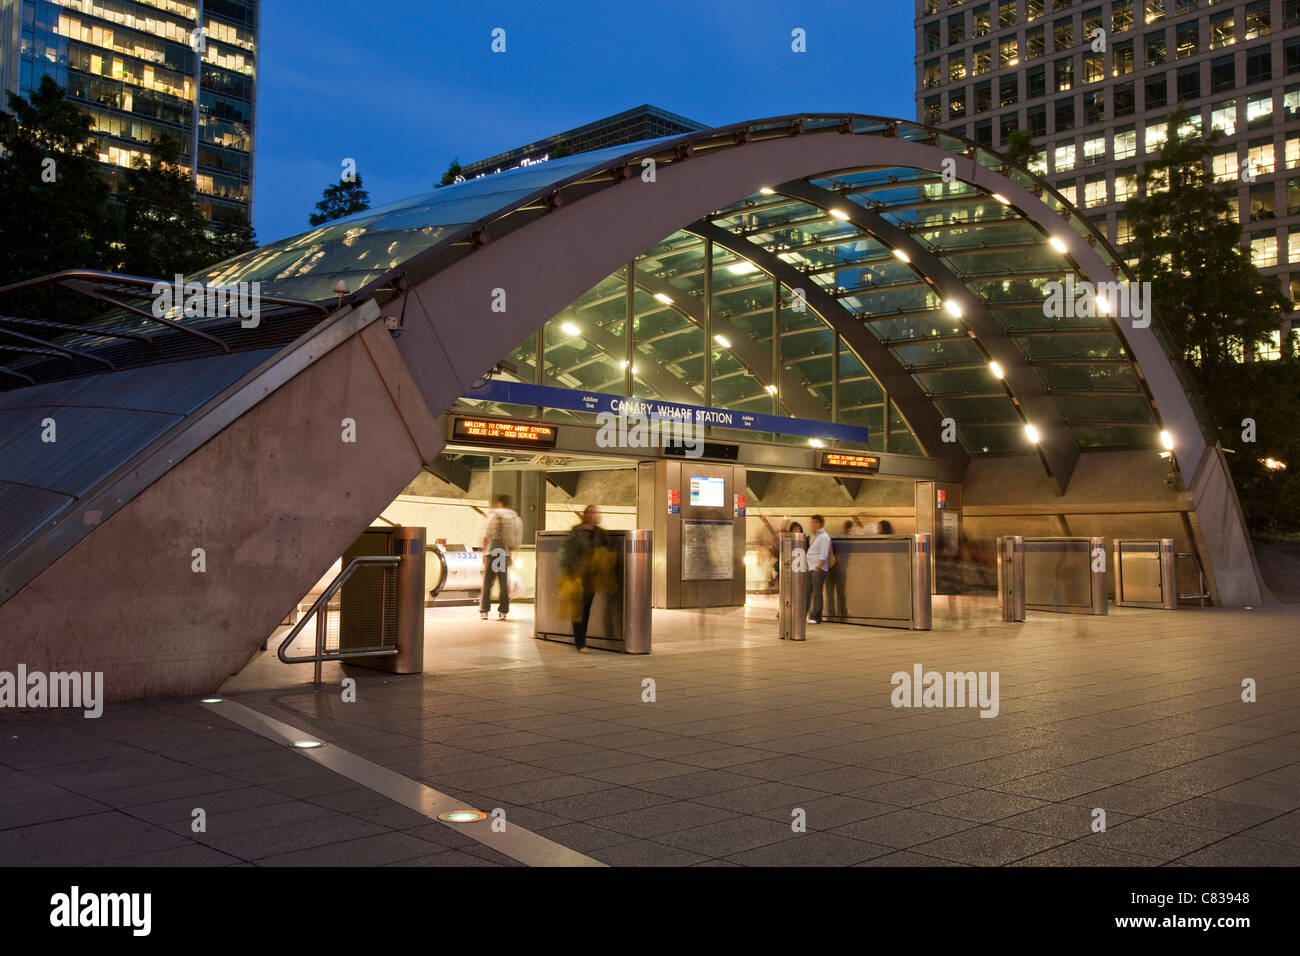 La station de métro Canary Wharf, Londres, Angleterre Banque D'Images